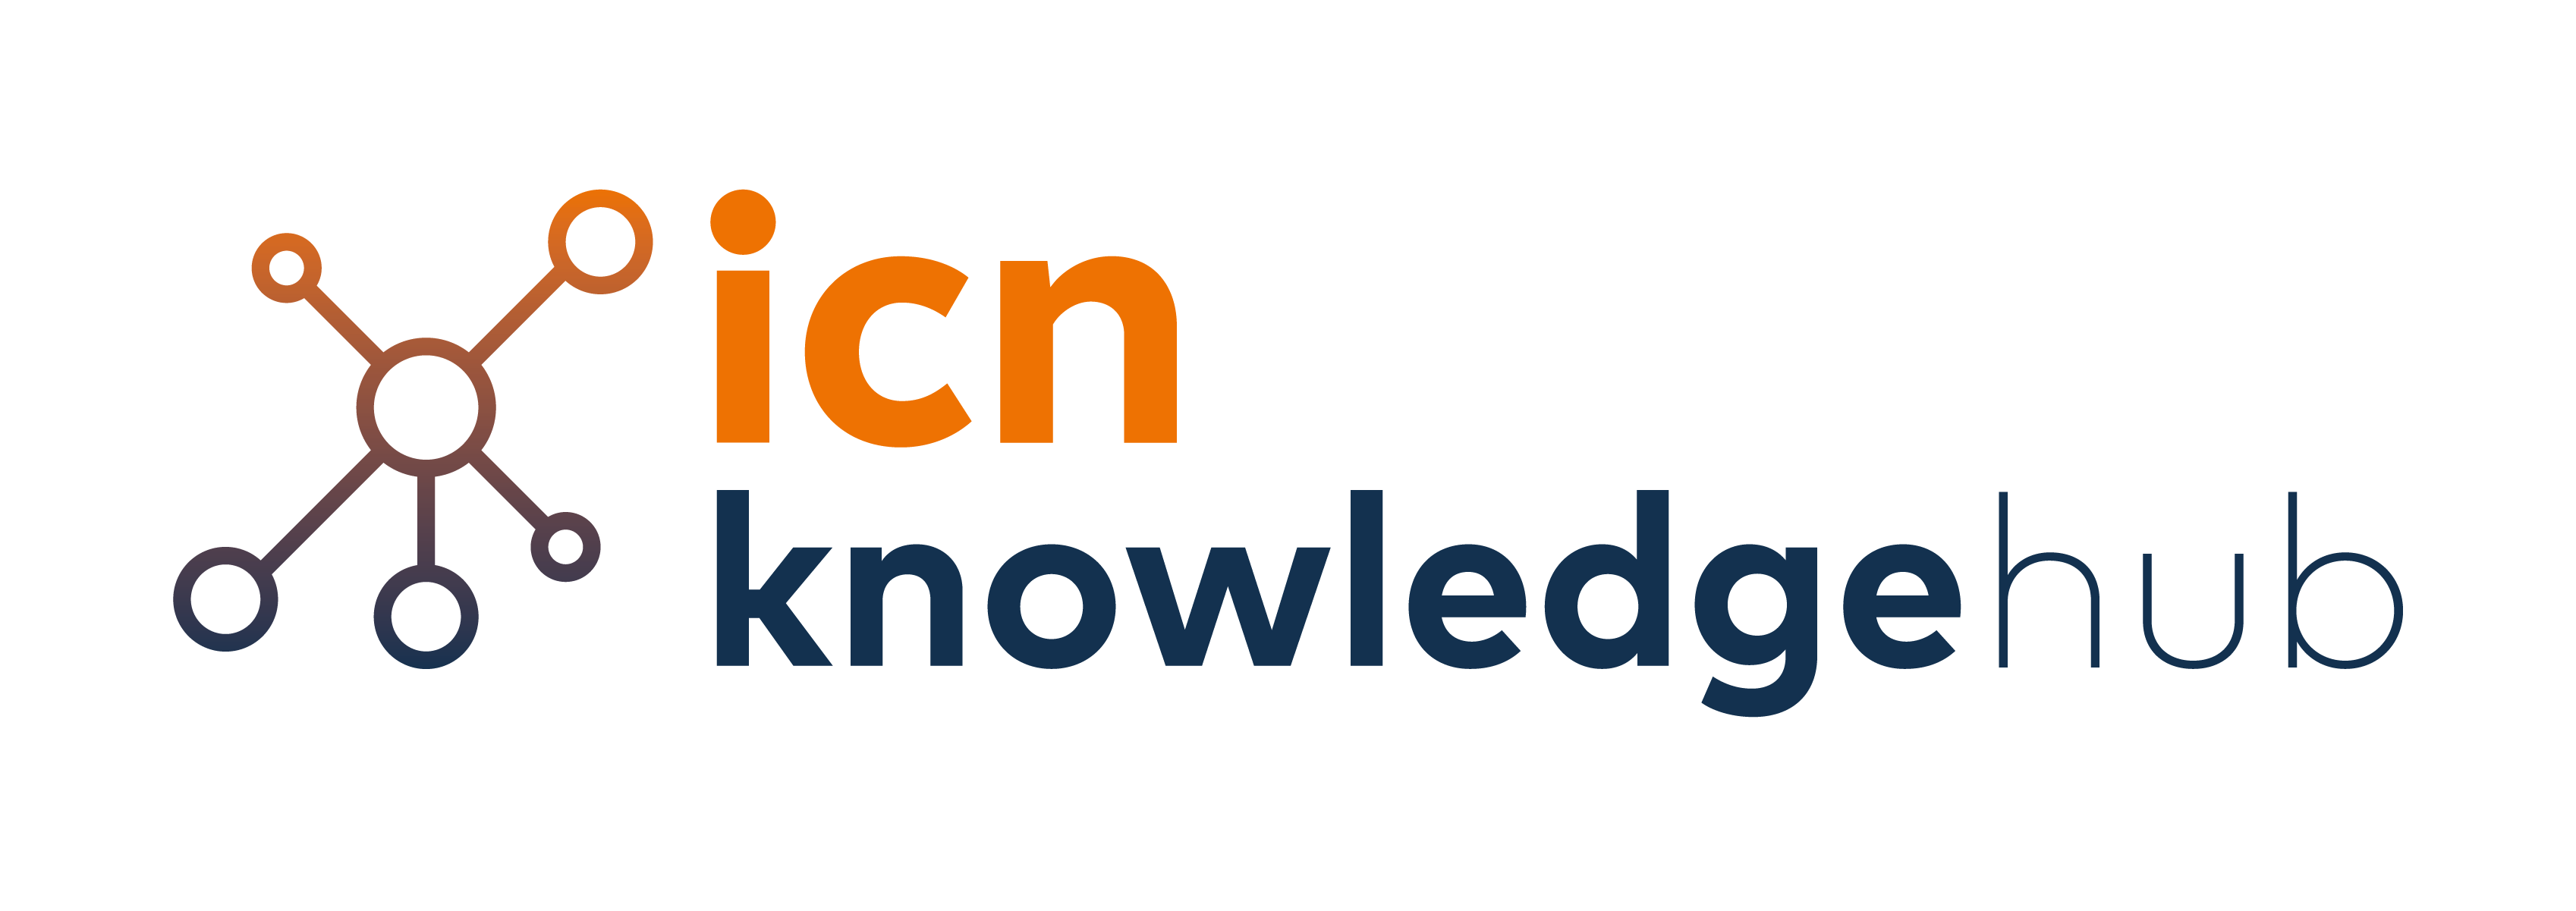 Rankings | ICN knowledge hub